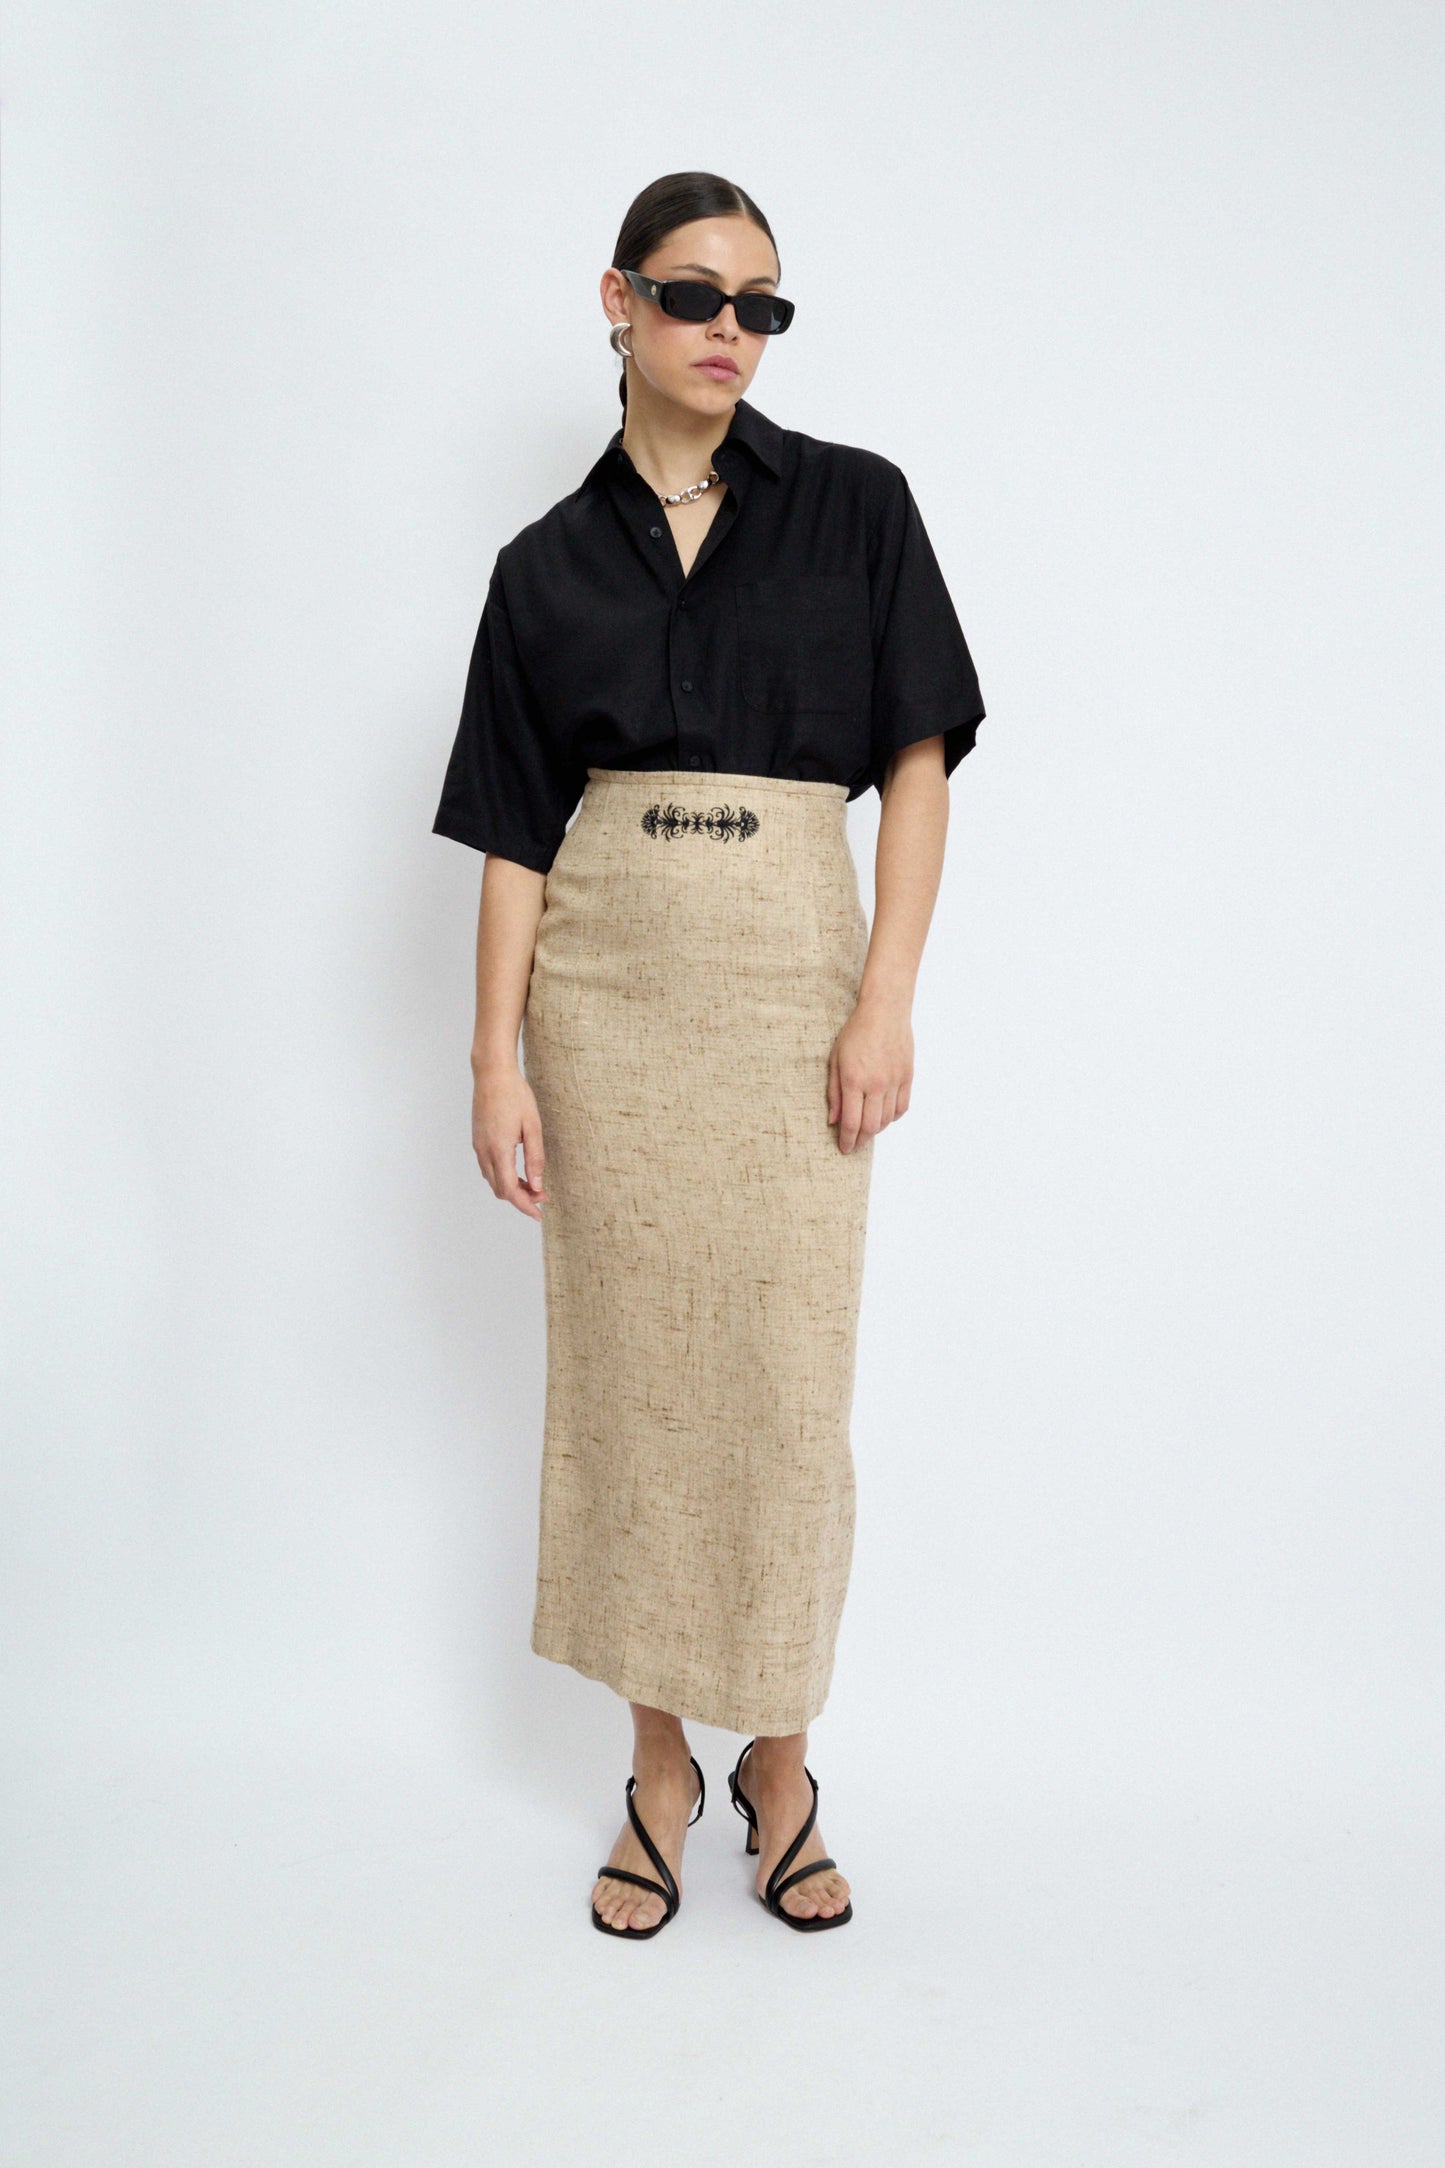 Maxi linen skirt by Sportalm